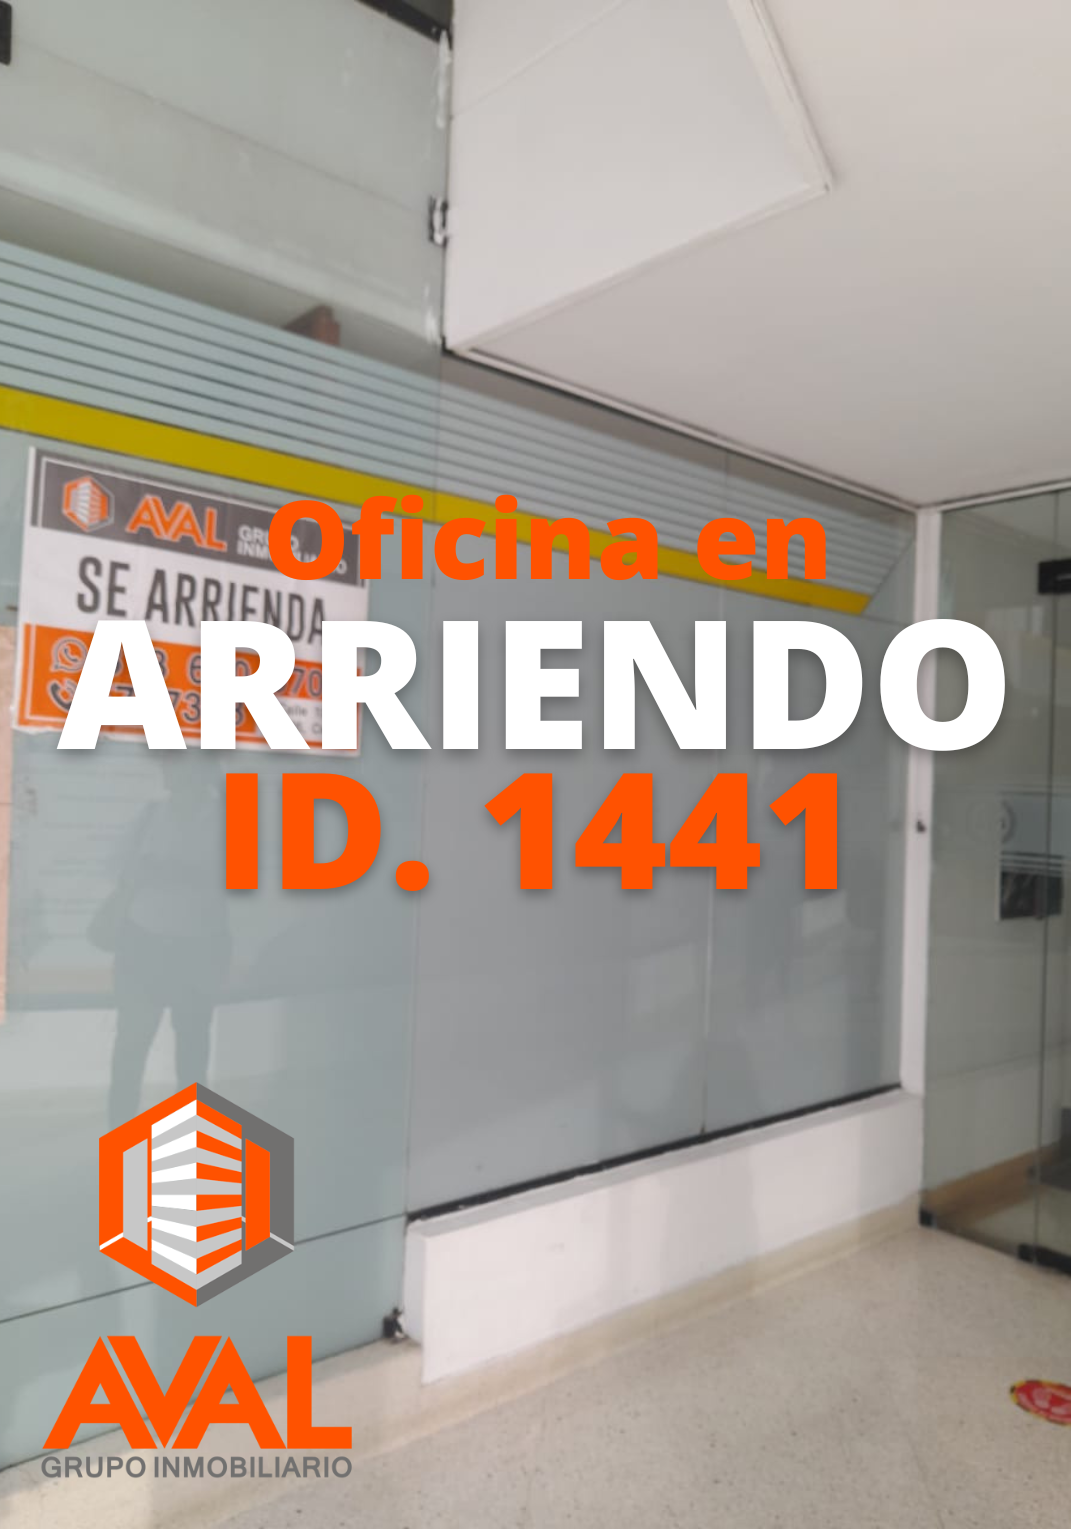 OFICINA EN ARRIENDO, CENTRO JURÍDICO, CÚCUTA ID 1441